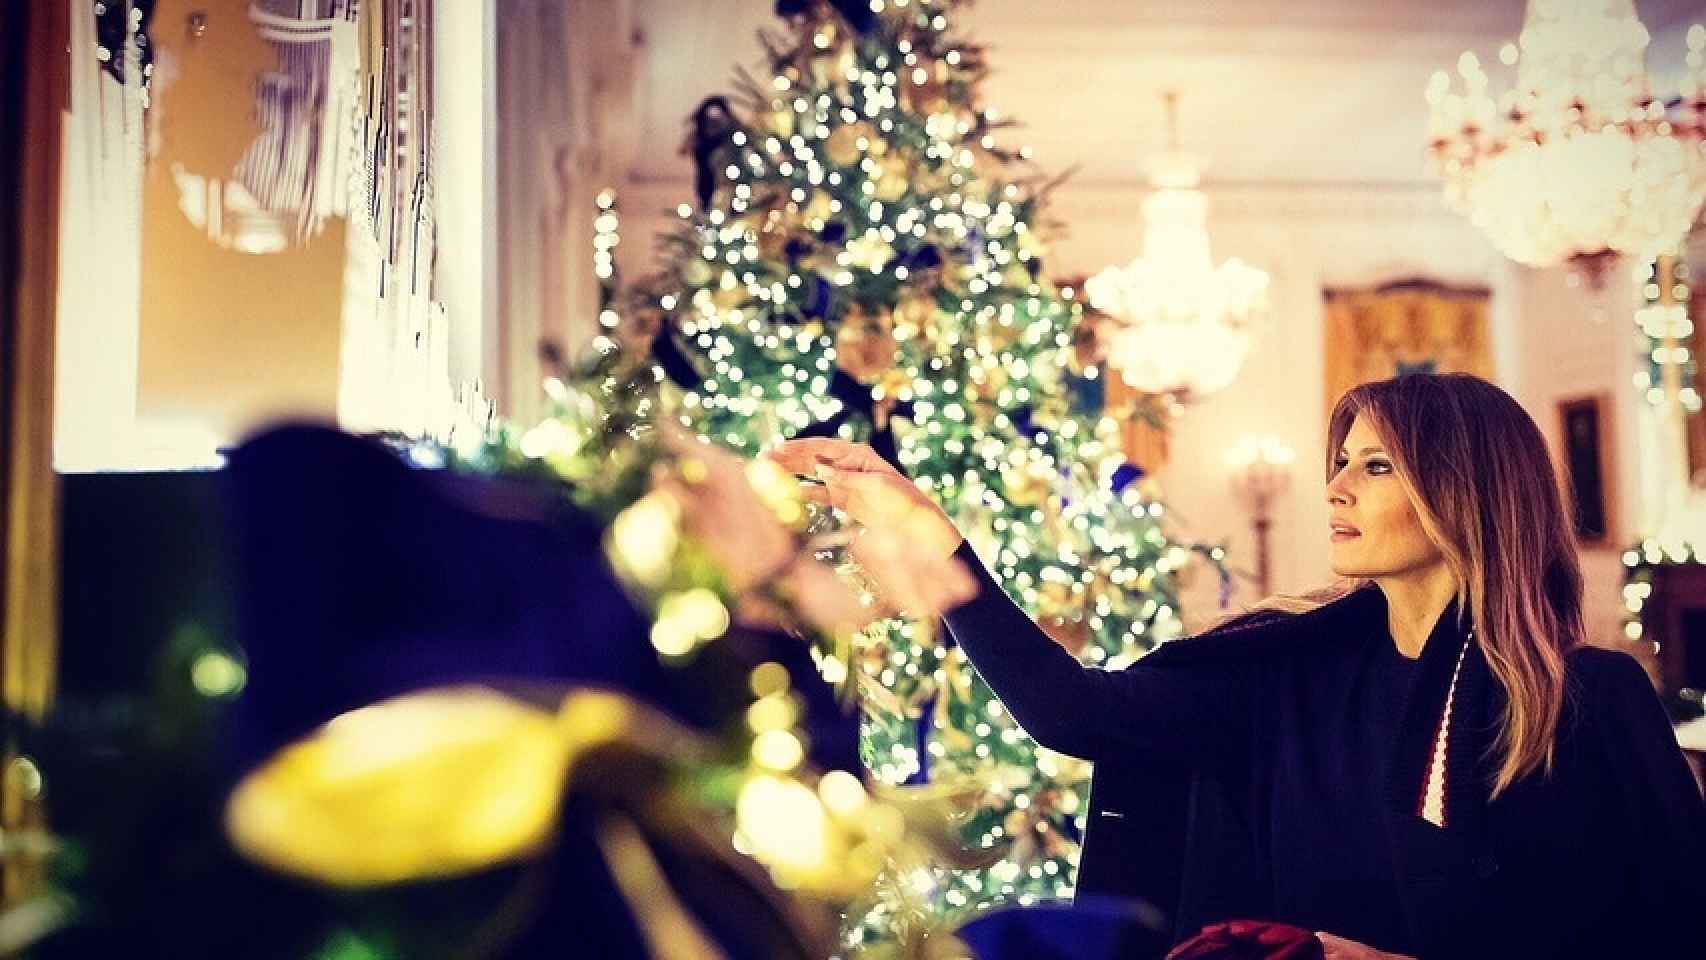 Melania Trump rematando la decoración navideña de la Casa Blanca